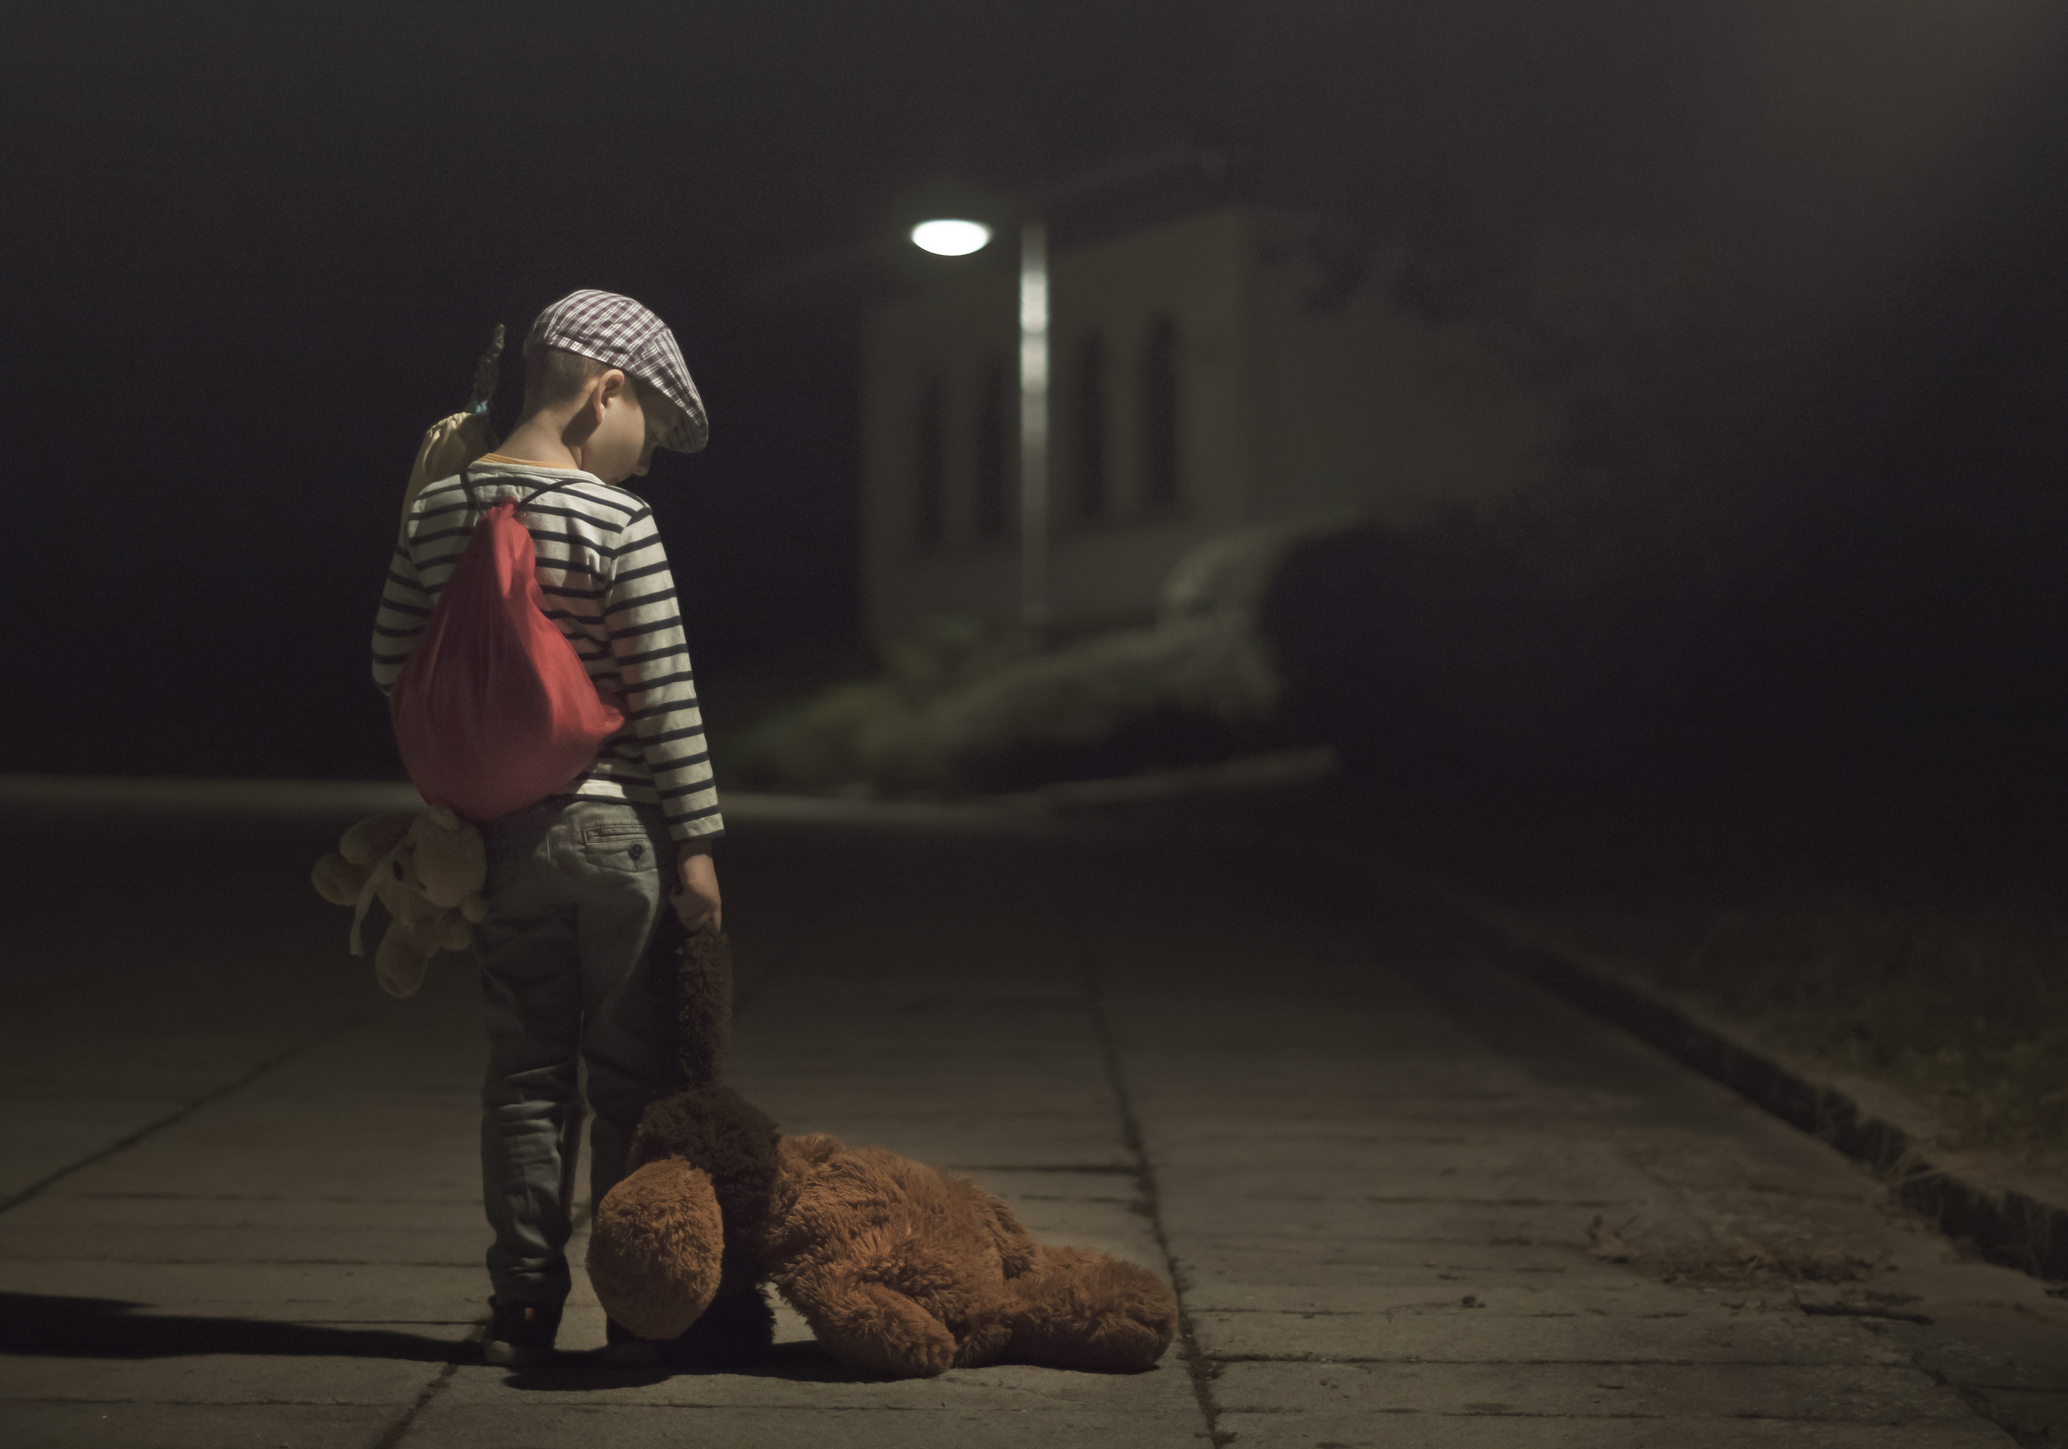 Barn alene i mørk gate med teddybjørn hengende fra hånden